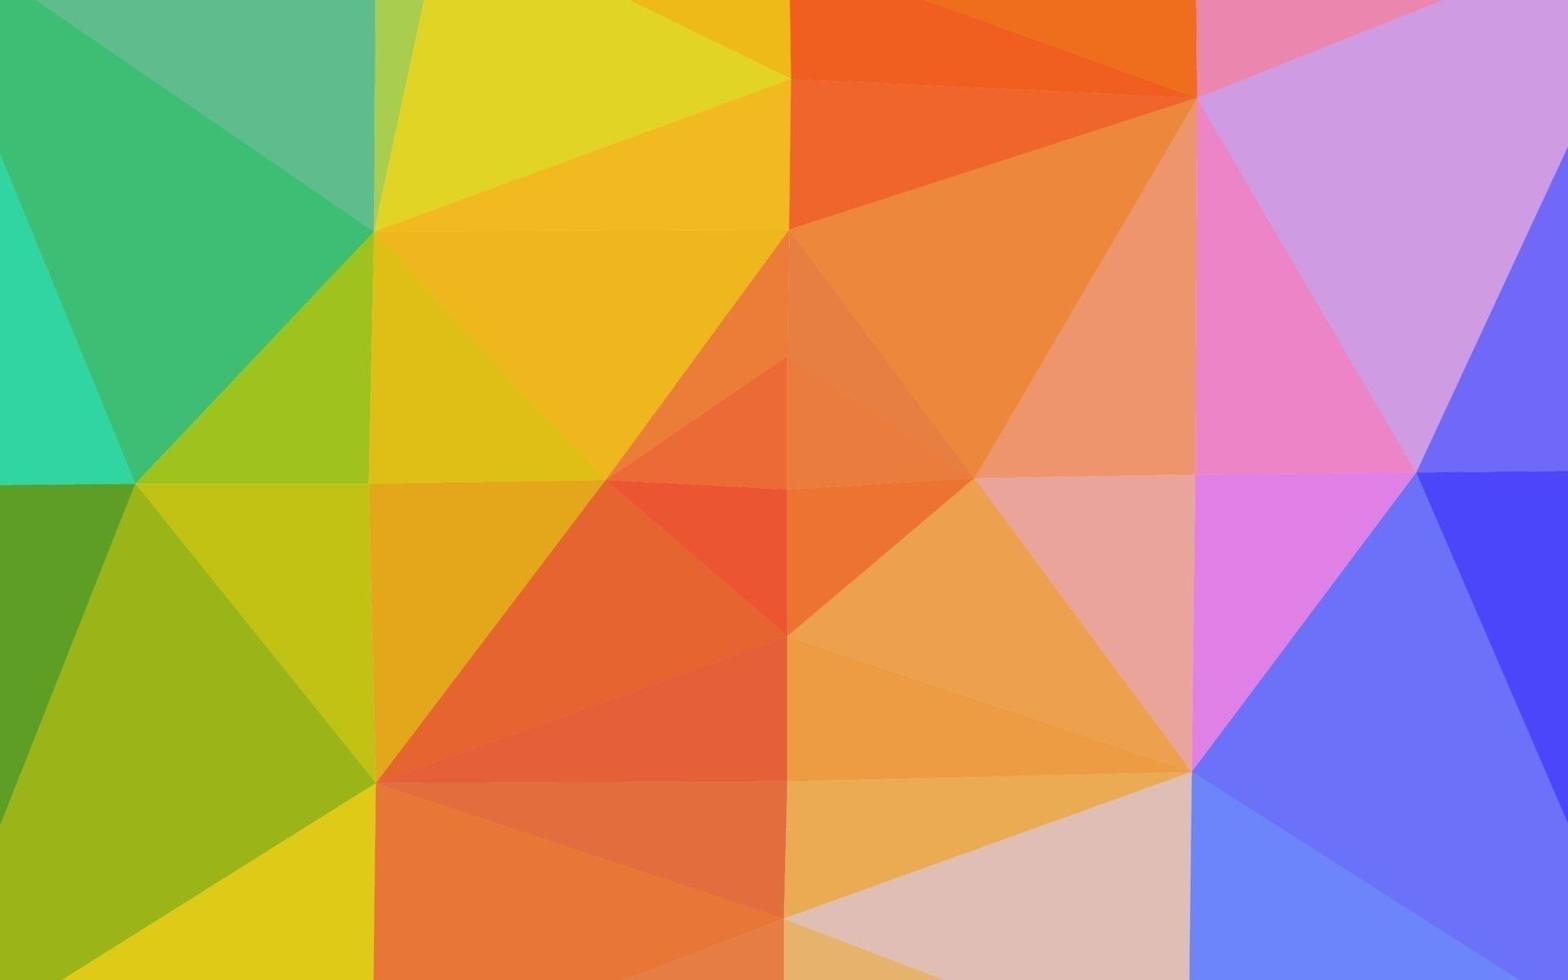 luce multicolore, arcobaleno vettore sfondo astratto mosaico.